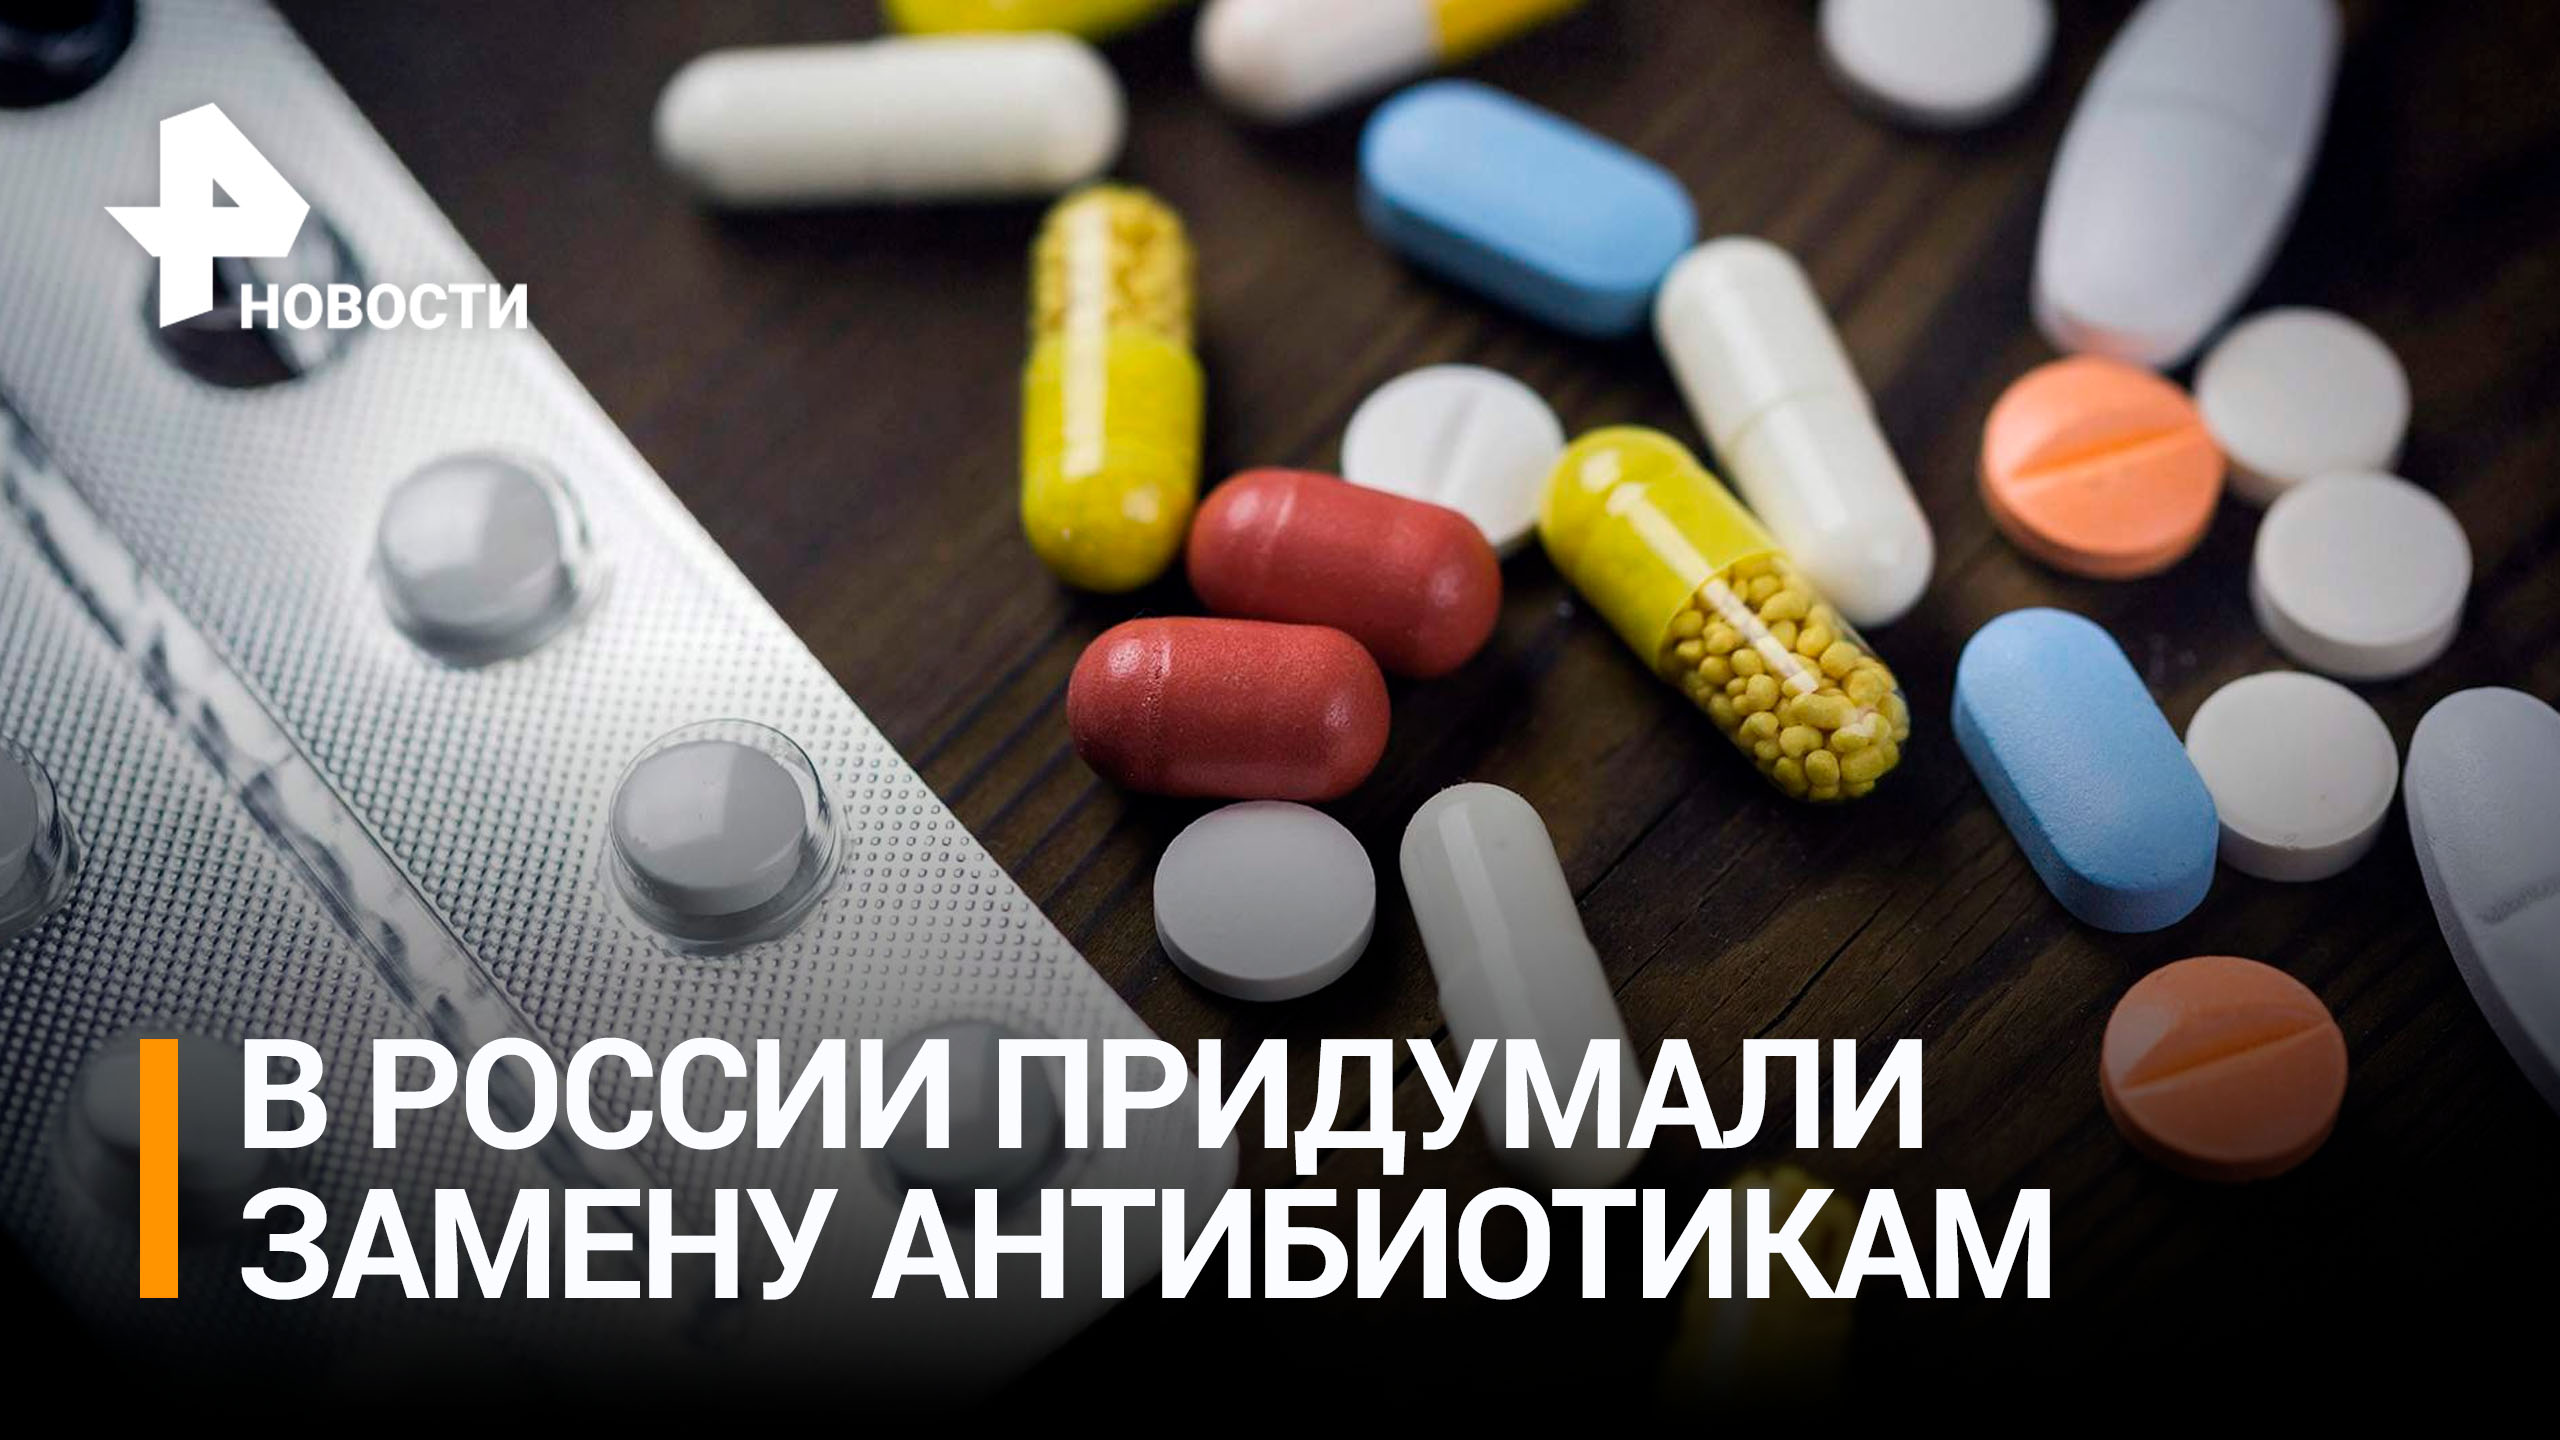 Российские ученые создали лекарство нового поколения, способное заменить антибиотики / РЕН Новости